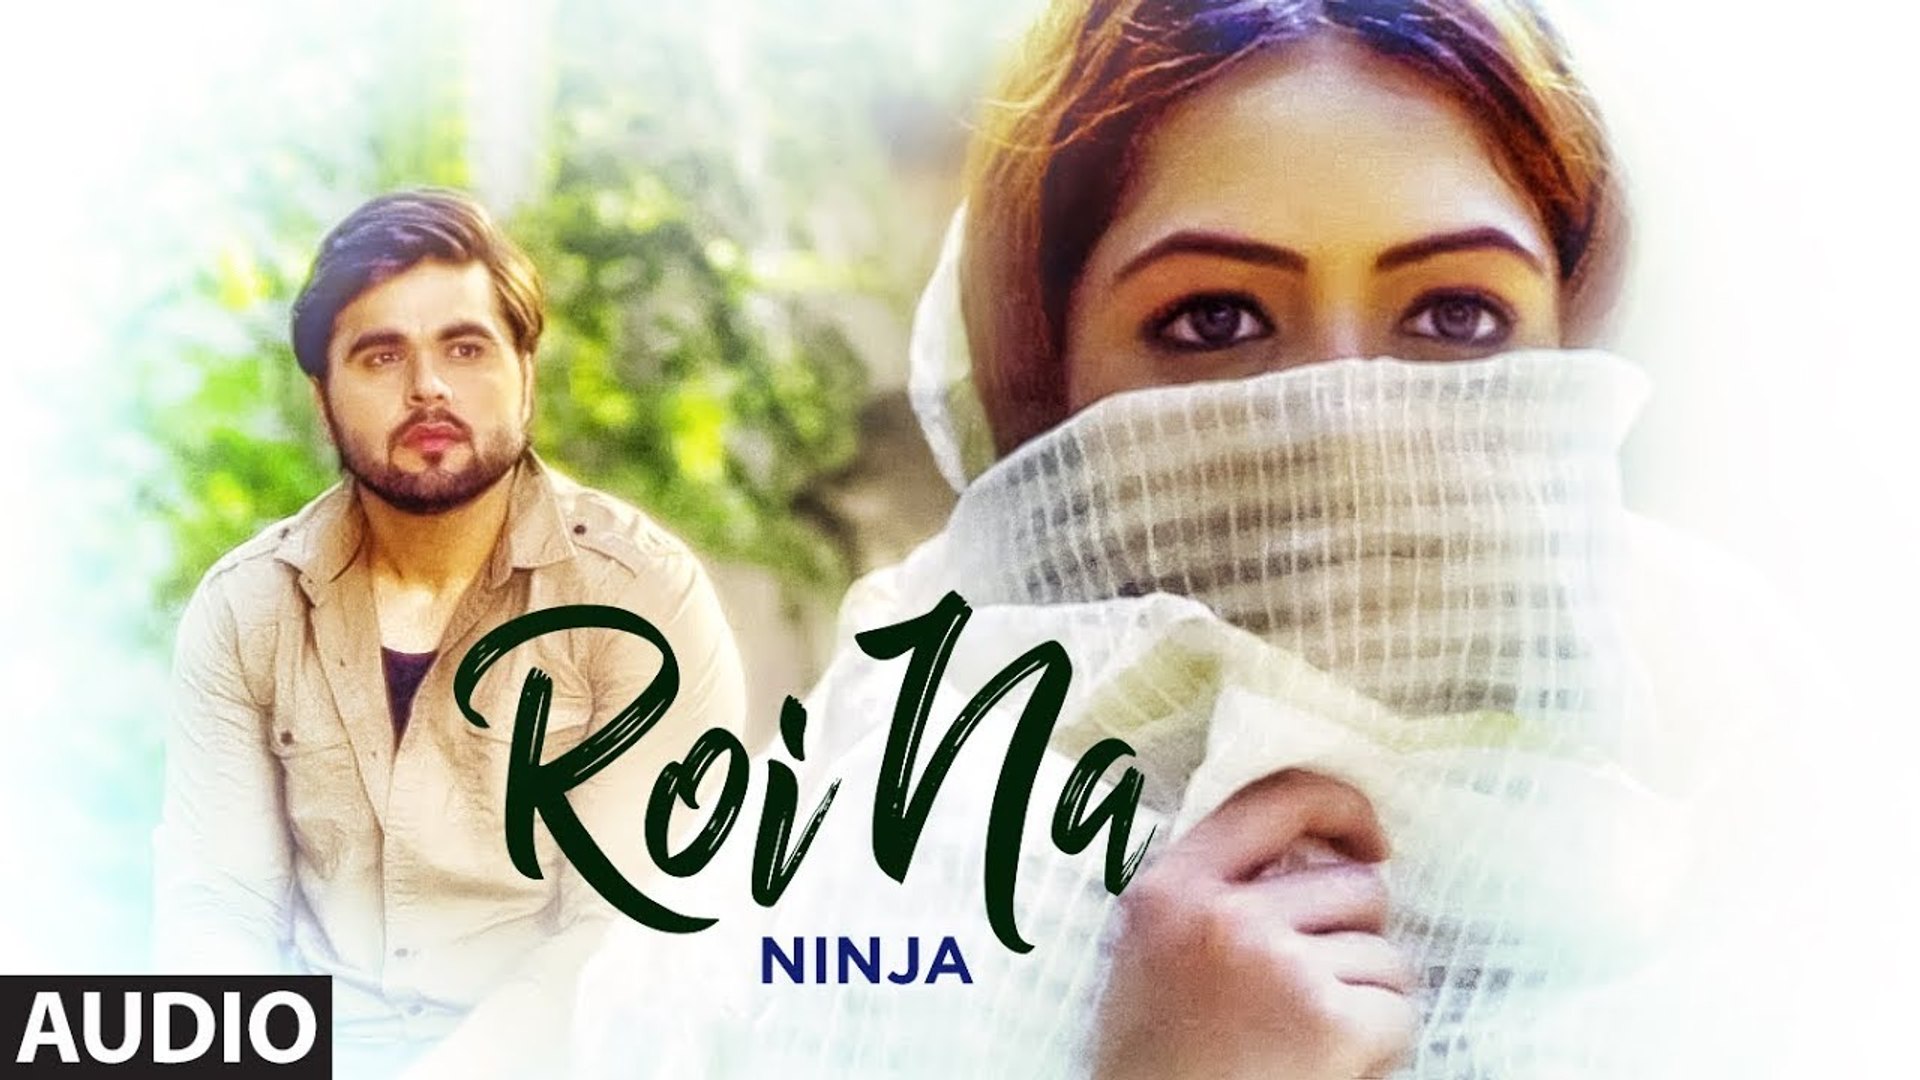 Roi Na Ninja Shiddat - Roi Na Ninja Song , HD Wallpaper & Backgrounds